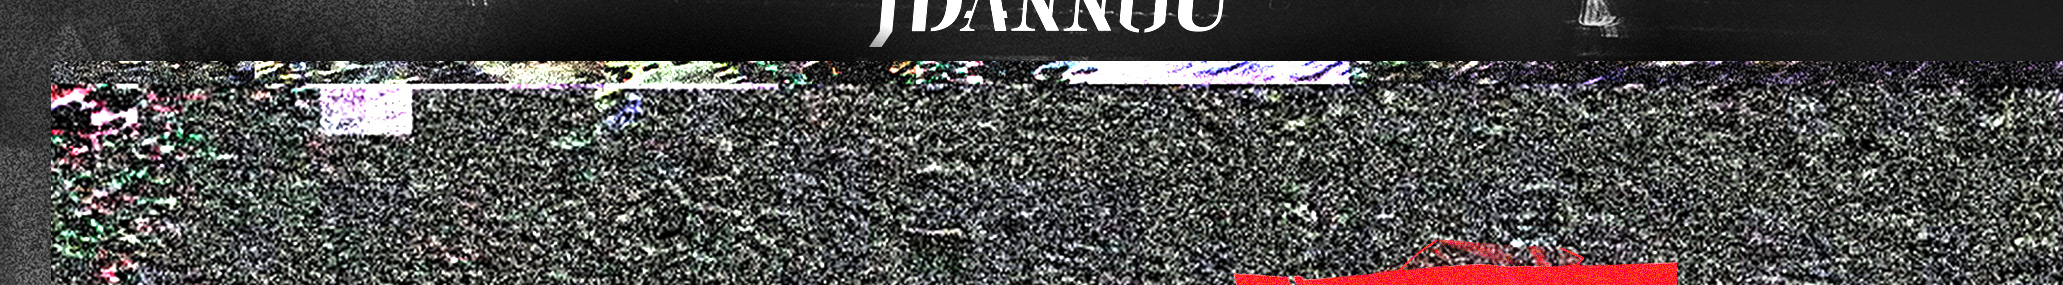 JDANNOU ?'s profile banner